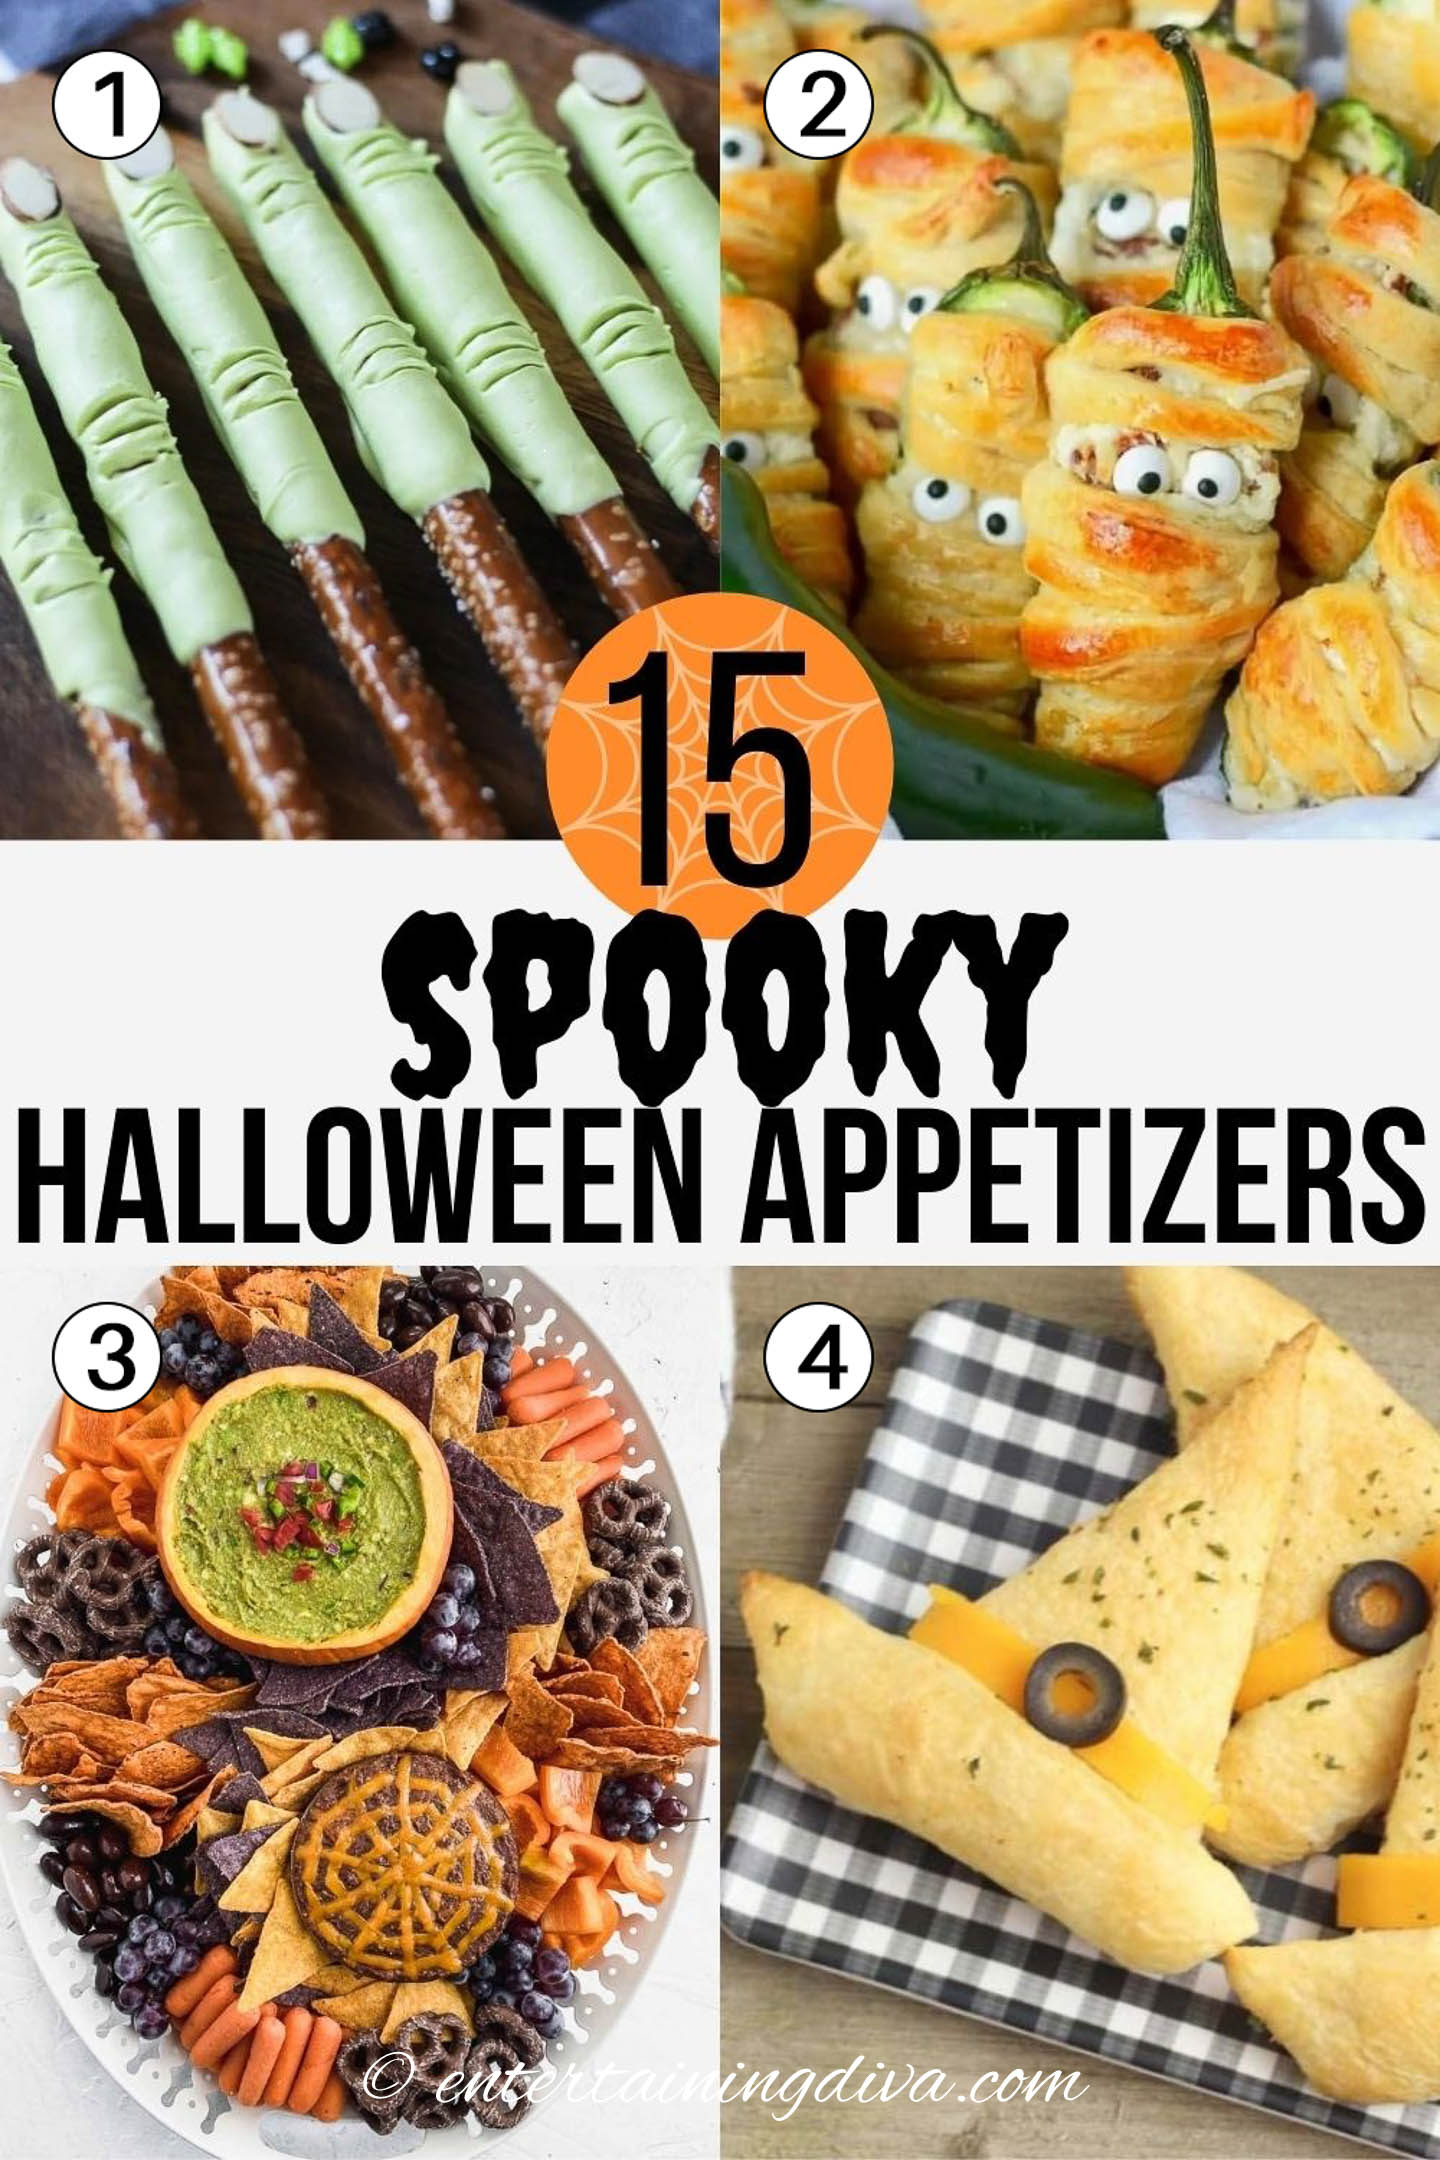 Spooky Halloween appetizers - Frankenstein fingers, bacon jalapeno mummies, Halloween charcuterie board, witch hat garlic bread